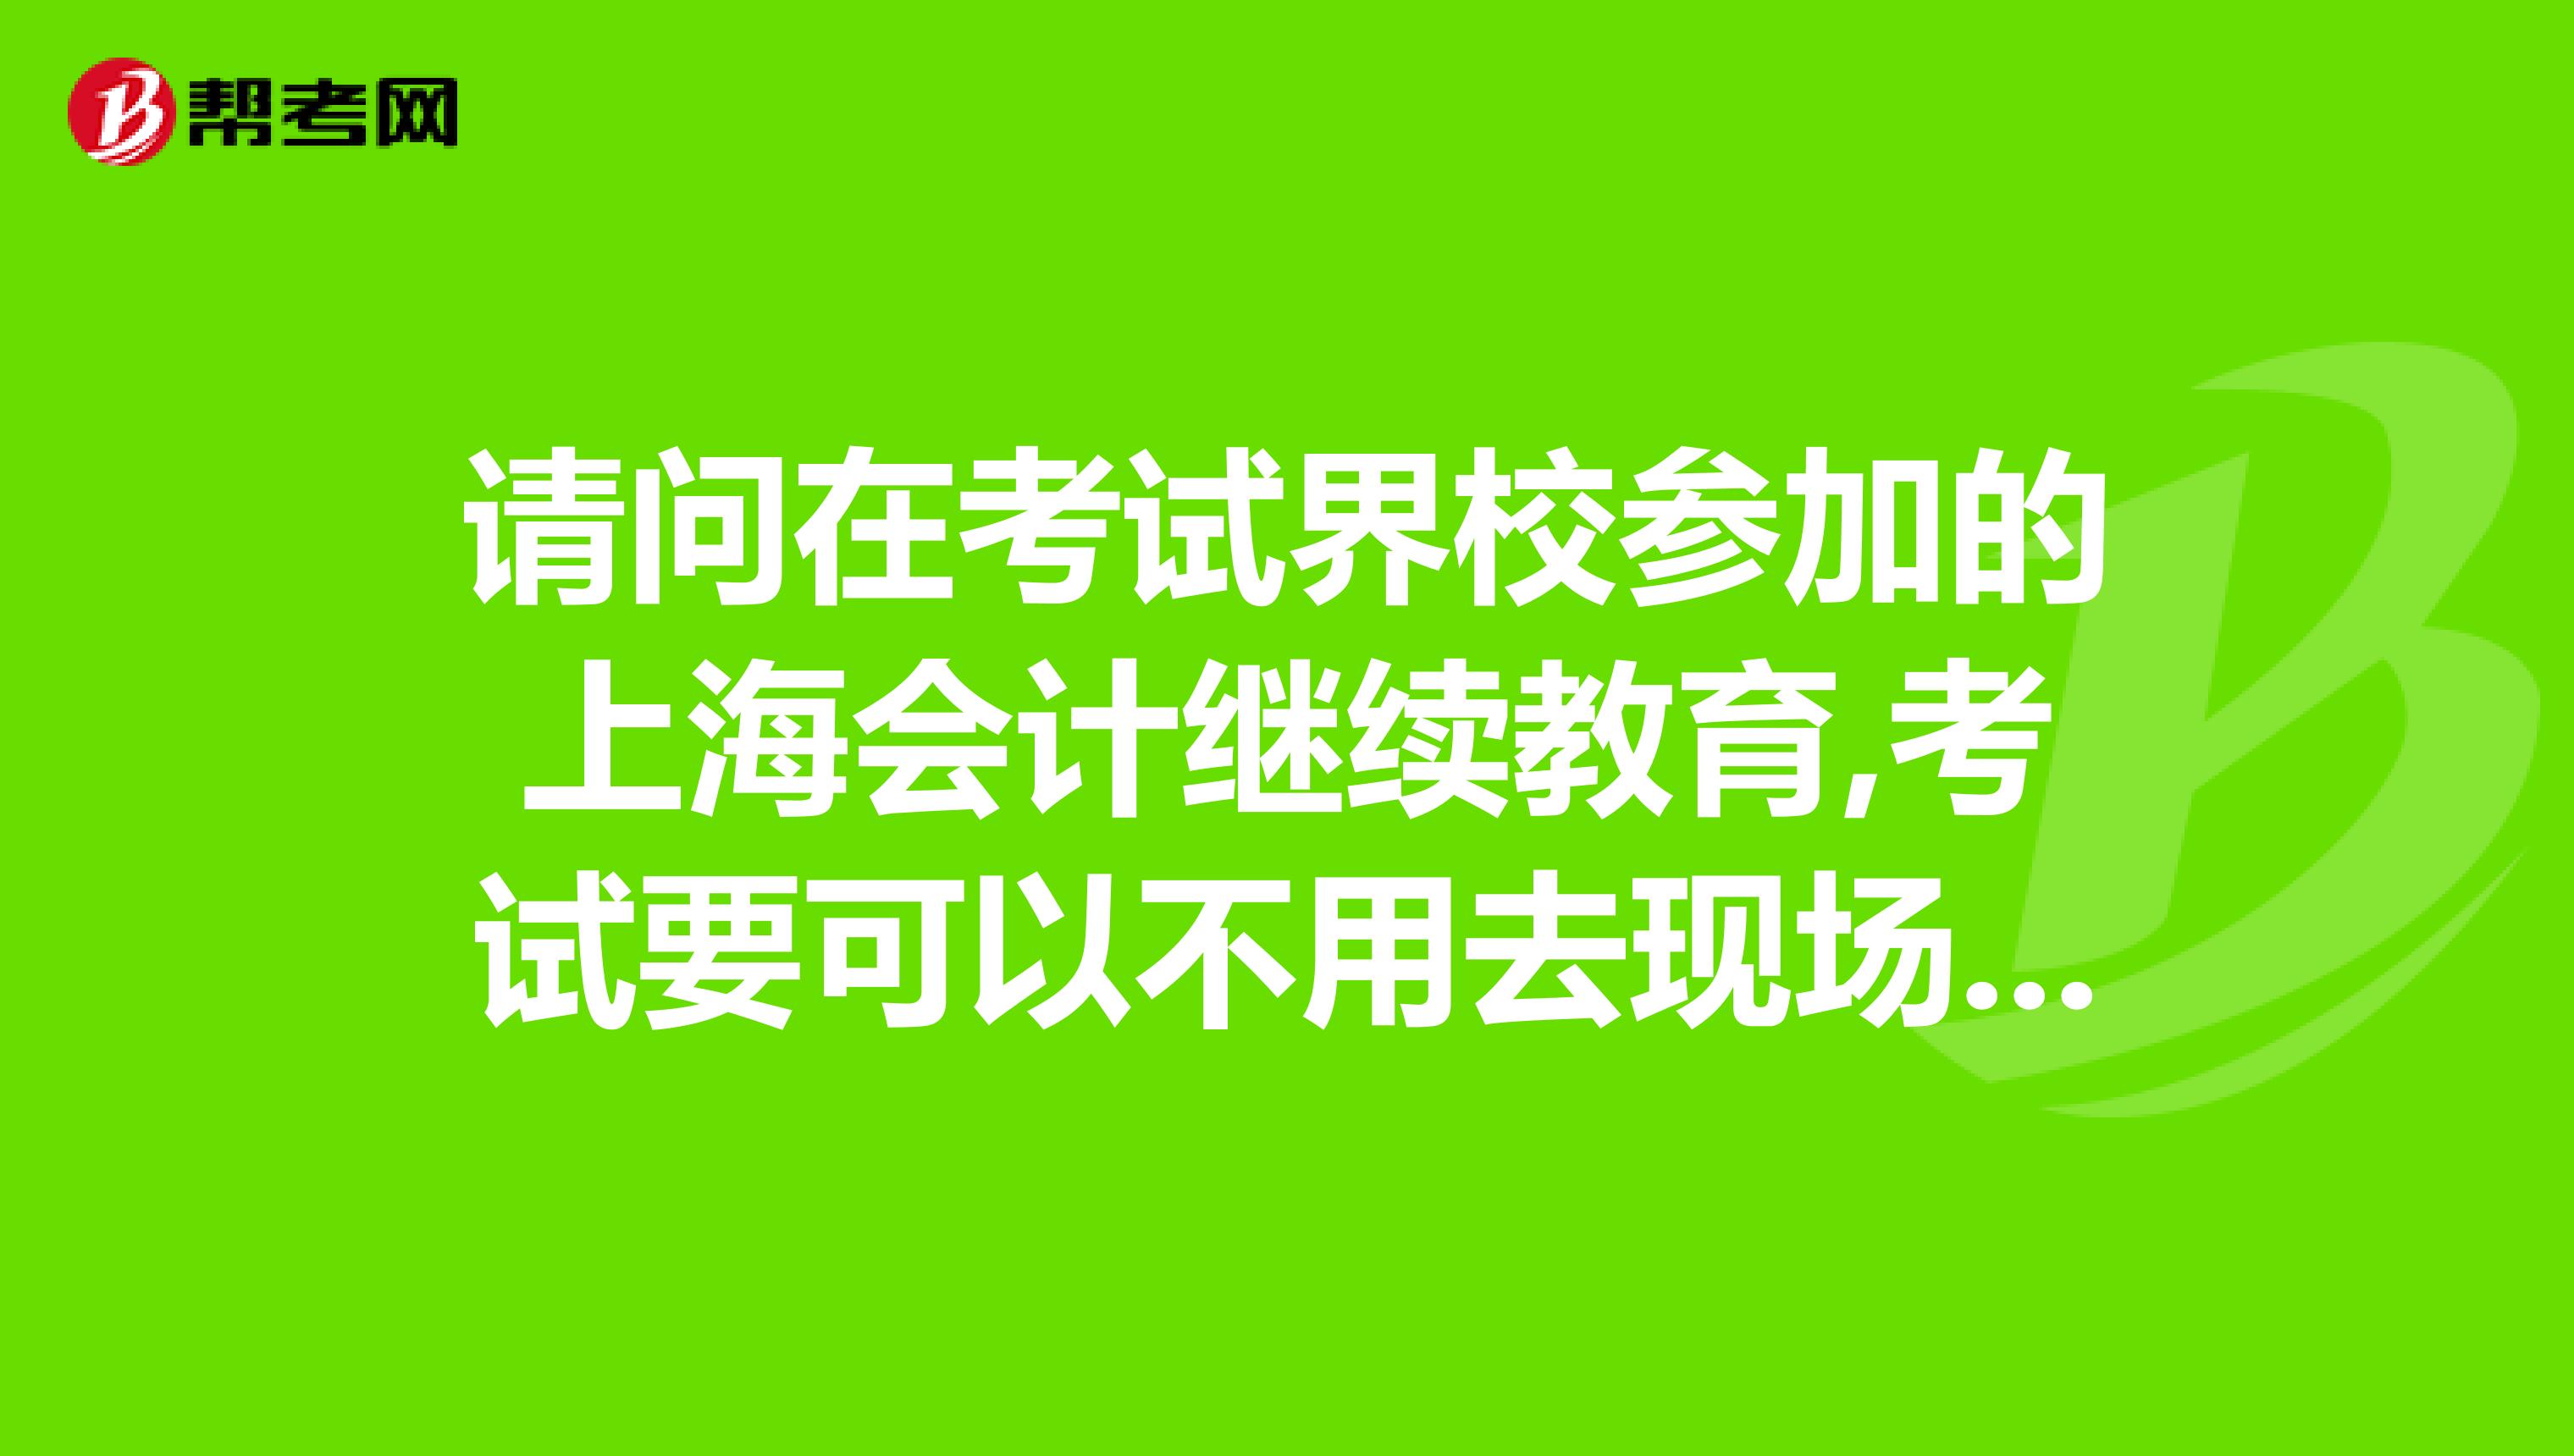 上海会计初级准考证打印时间_初级会计准考证打印入口上海_上海初级会计证准考证打印时间